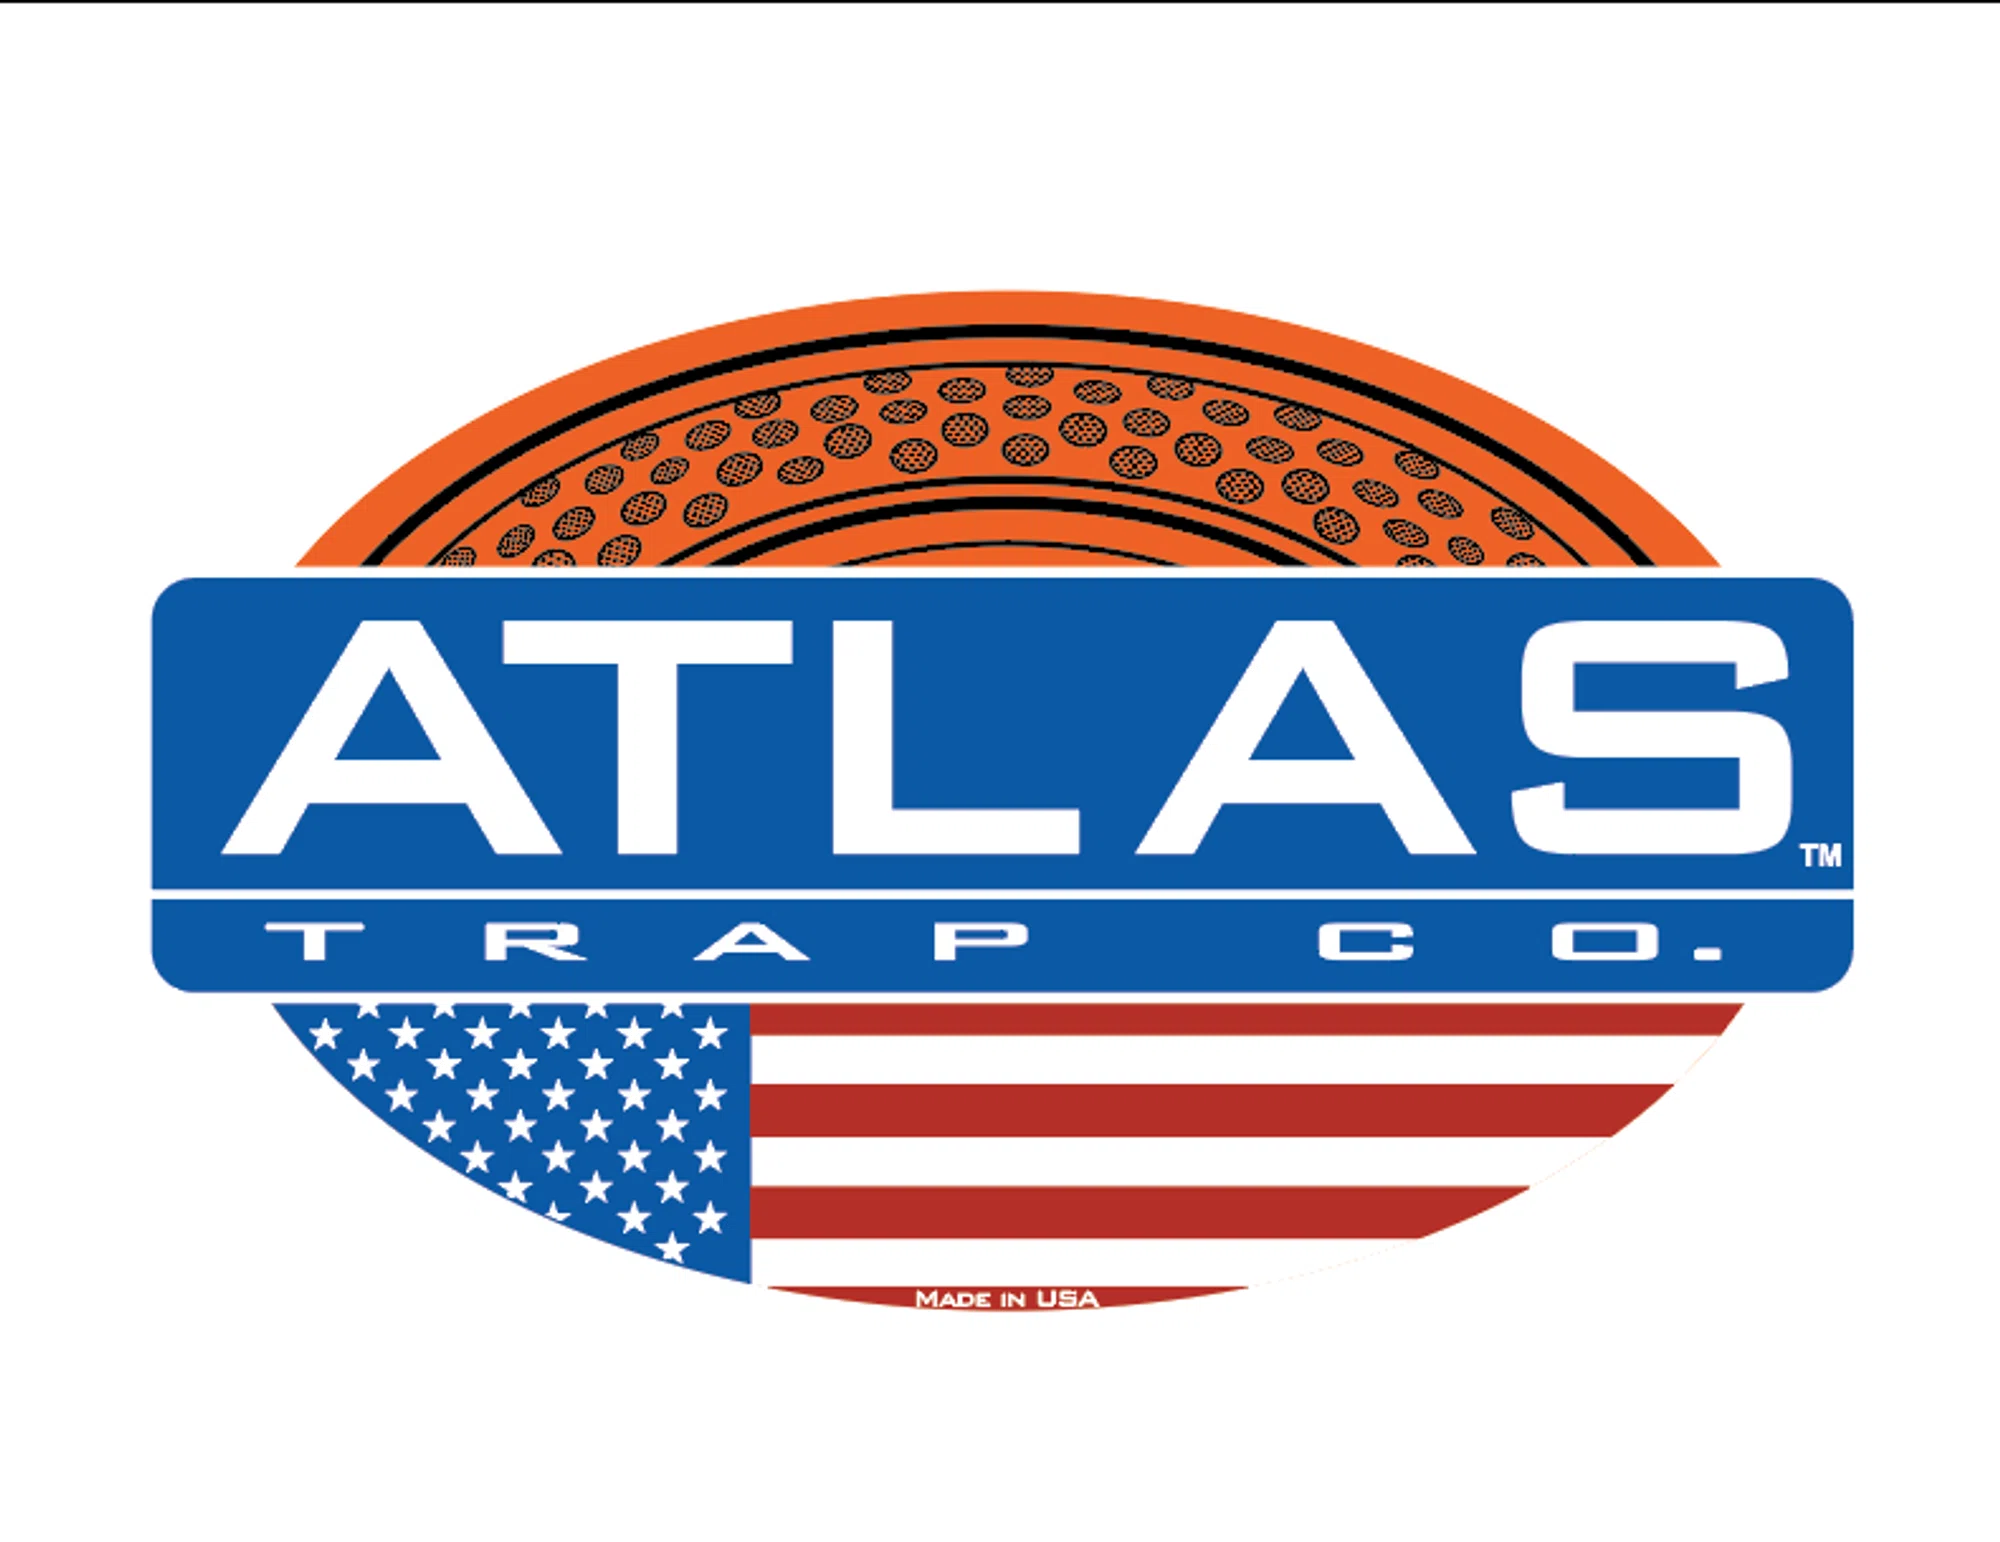 Atlas Traps